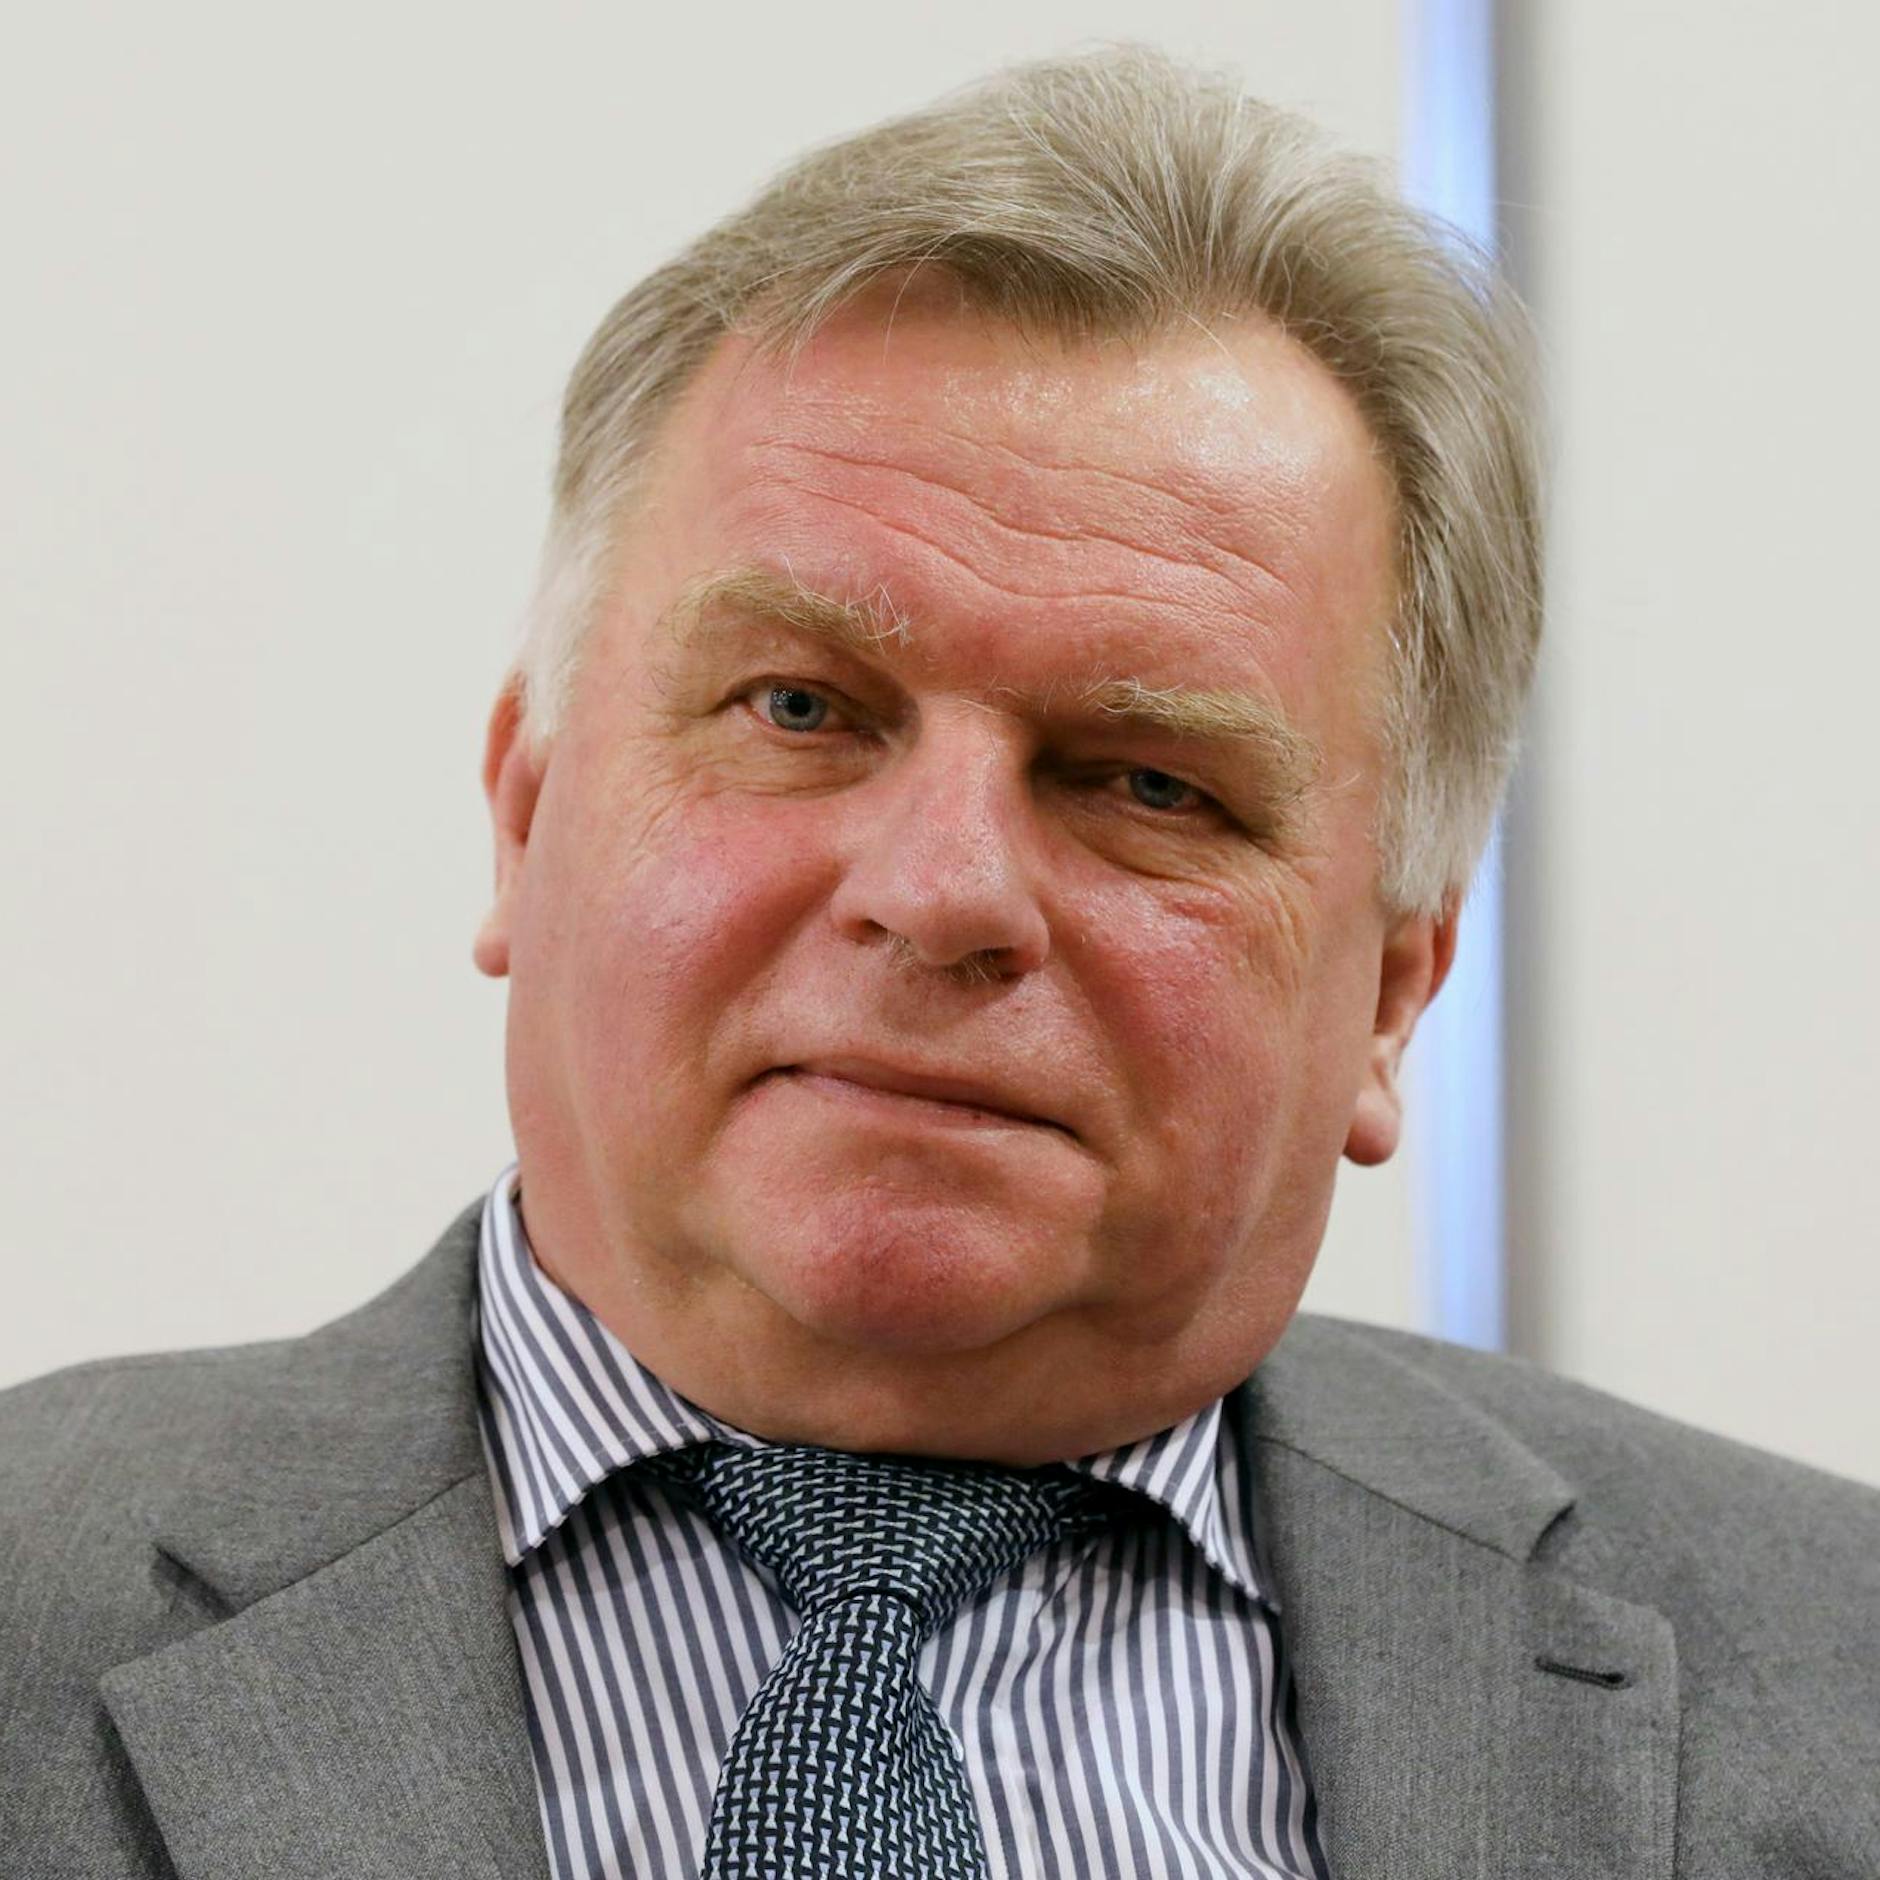 Image - Er unterschrieb den Einheitsvertrag: Zieht Ex-Minister Krause ins Dschungelcamp?